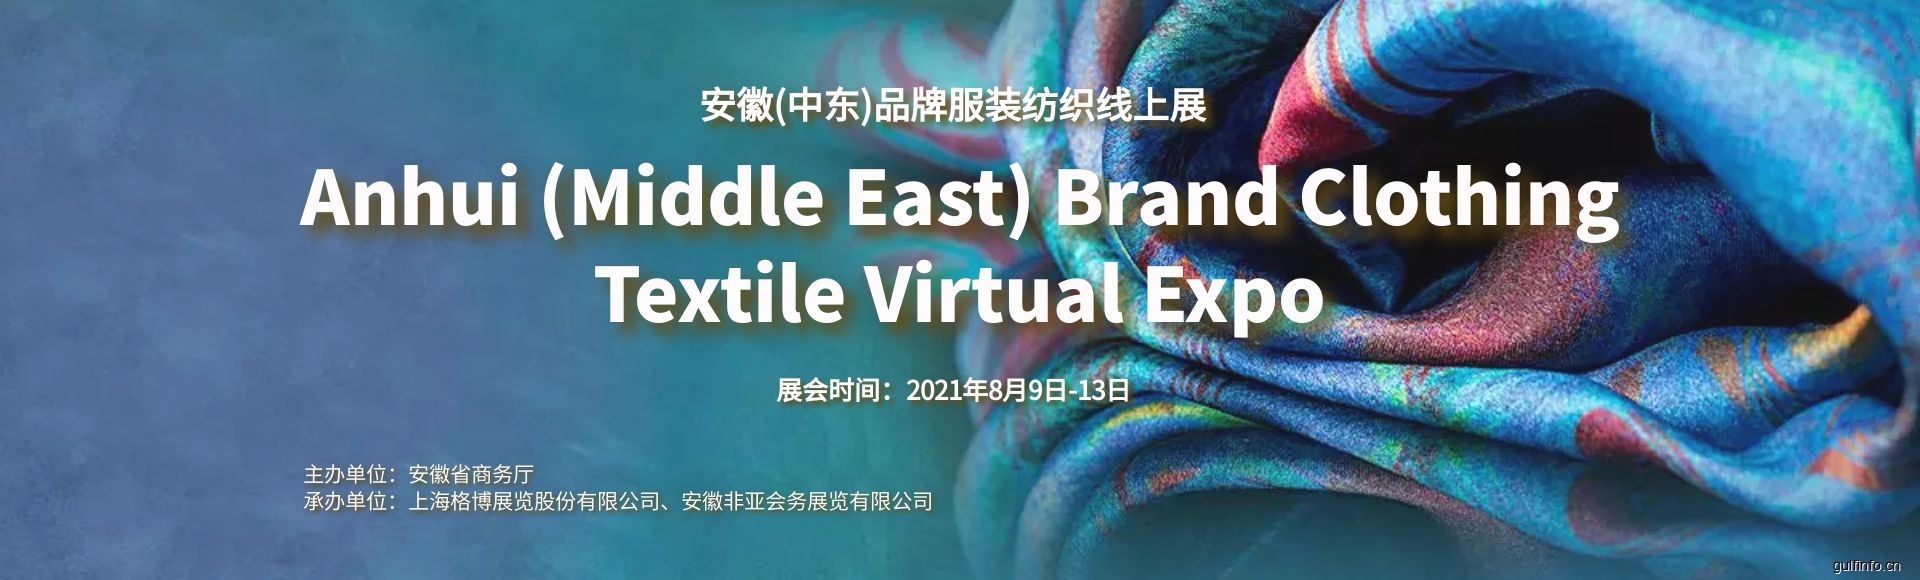 2021安徽(中东)品牌<font color=#ff0000>服装纺织</font>线上展即将启动